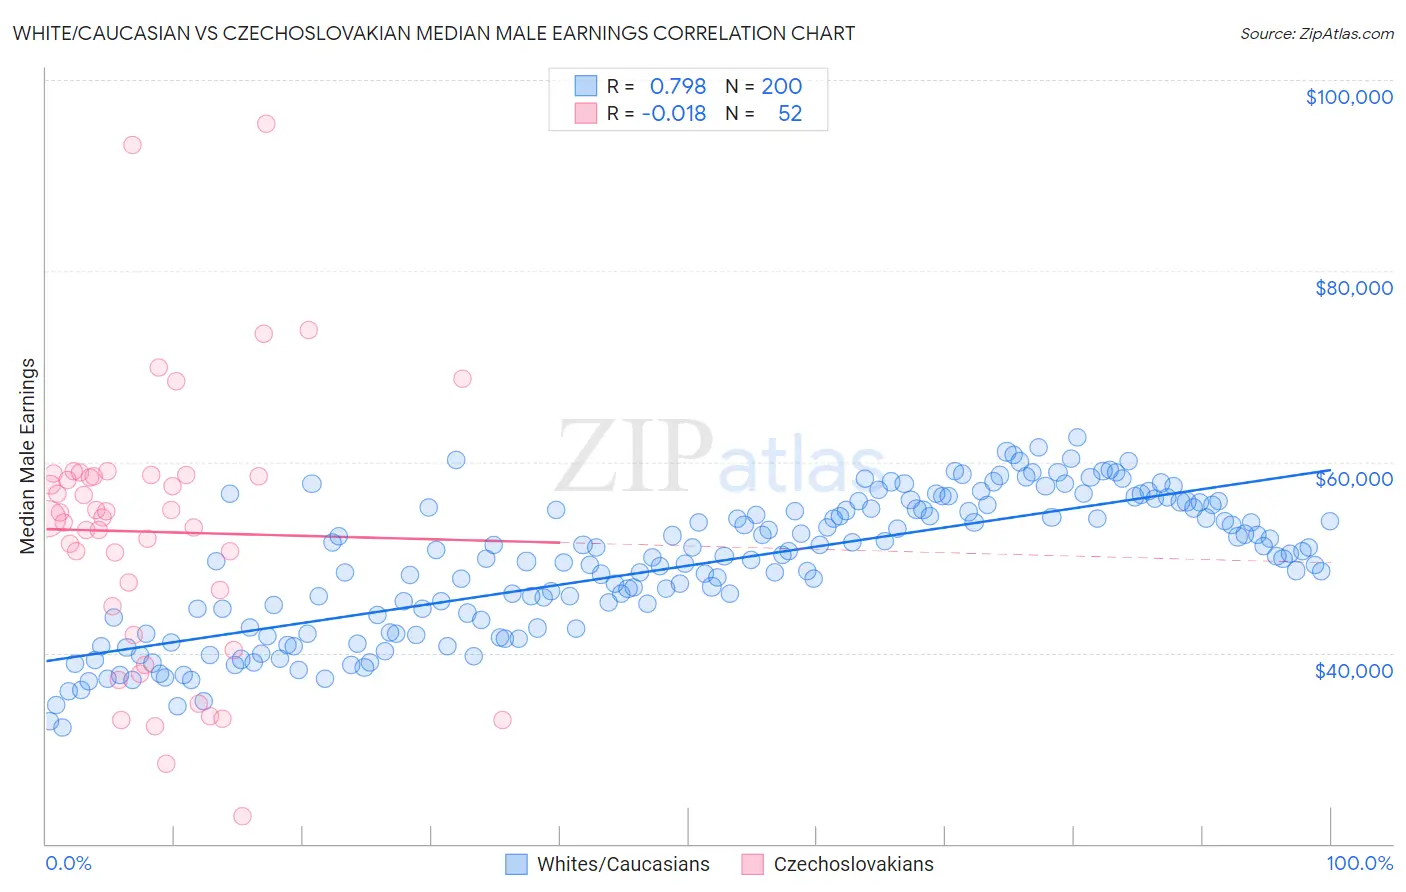 White/Caucasian vs Czechoslovakian Median Male Earnings